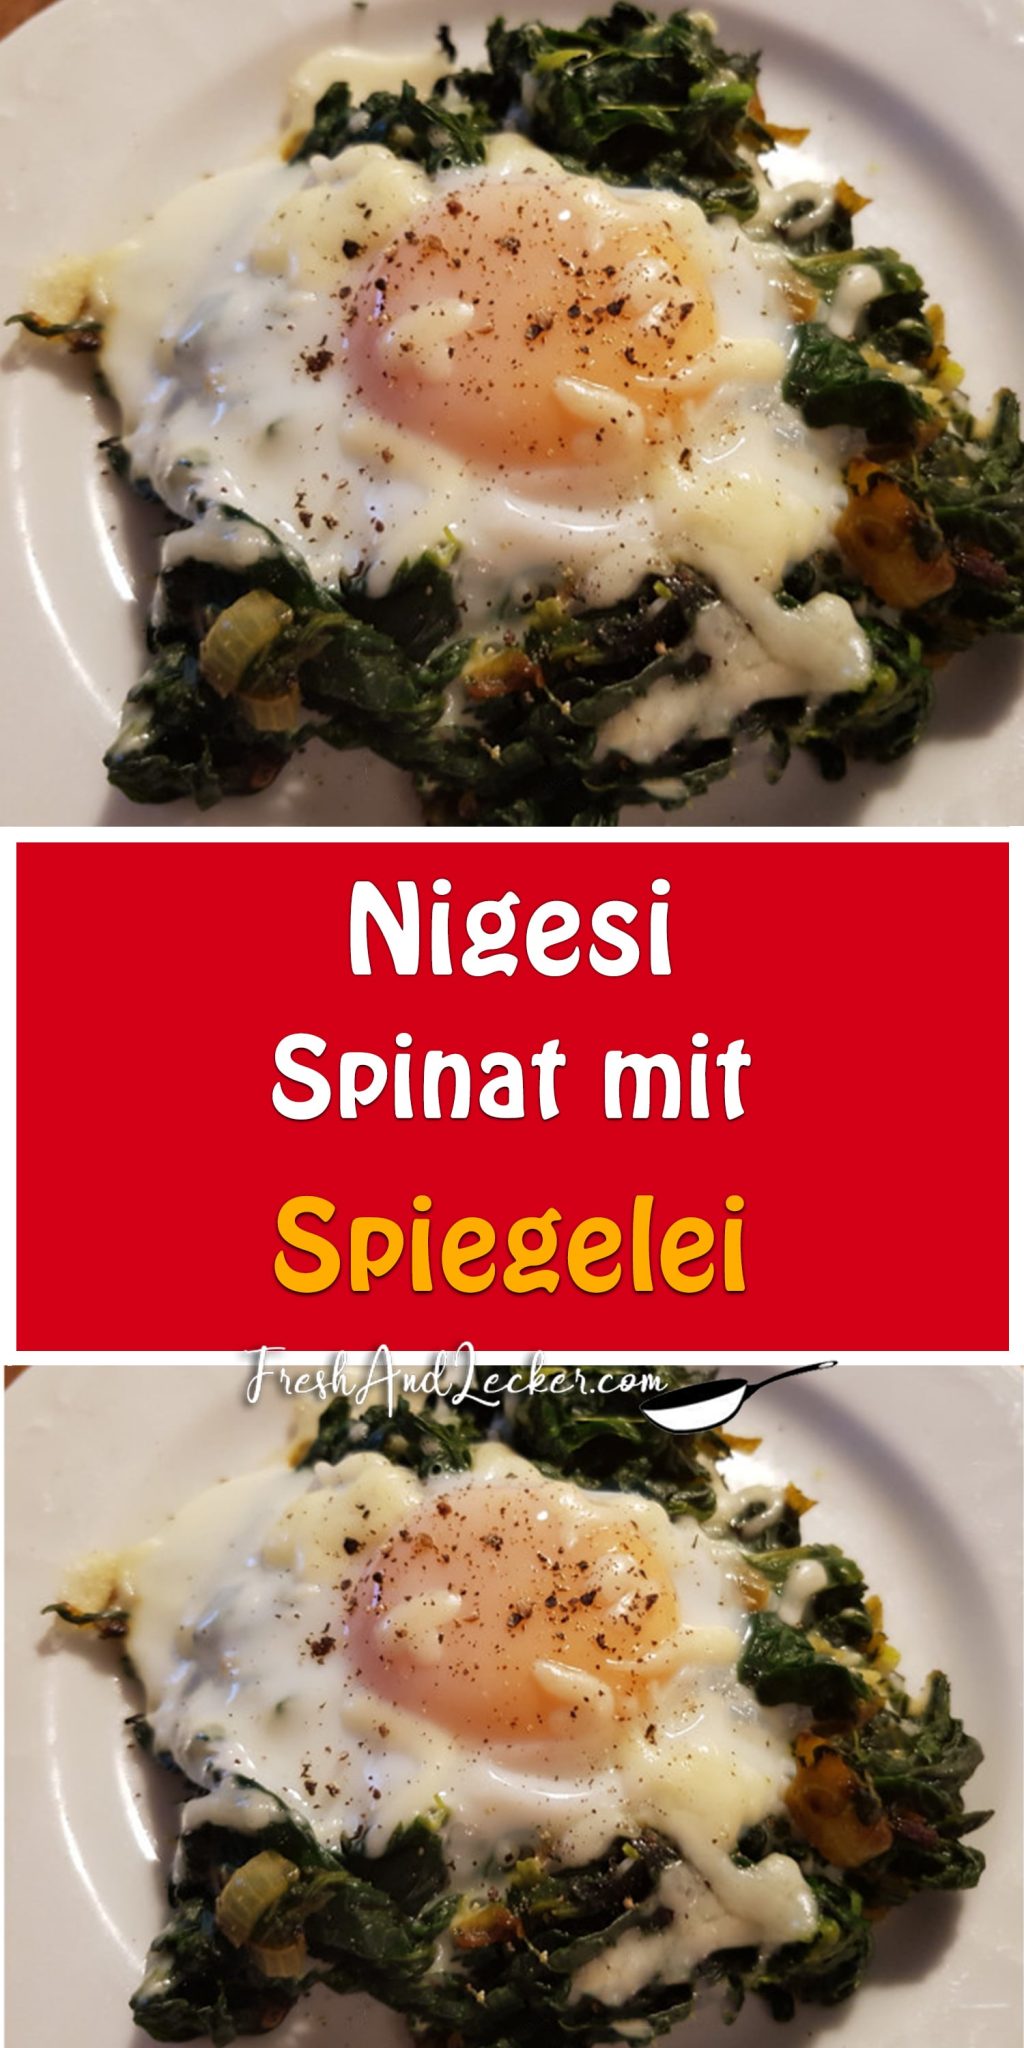 Nigesi – Spinat mit Spiegelei - Fresh Lecker